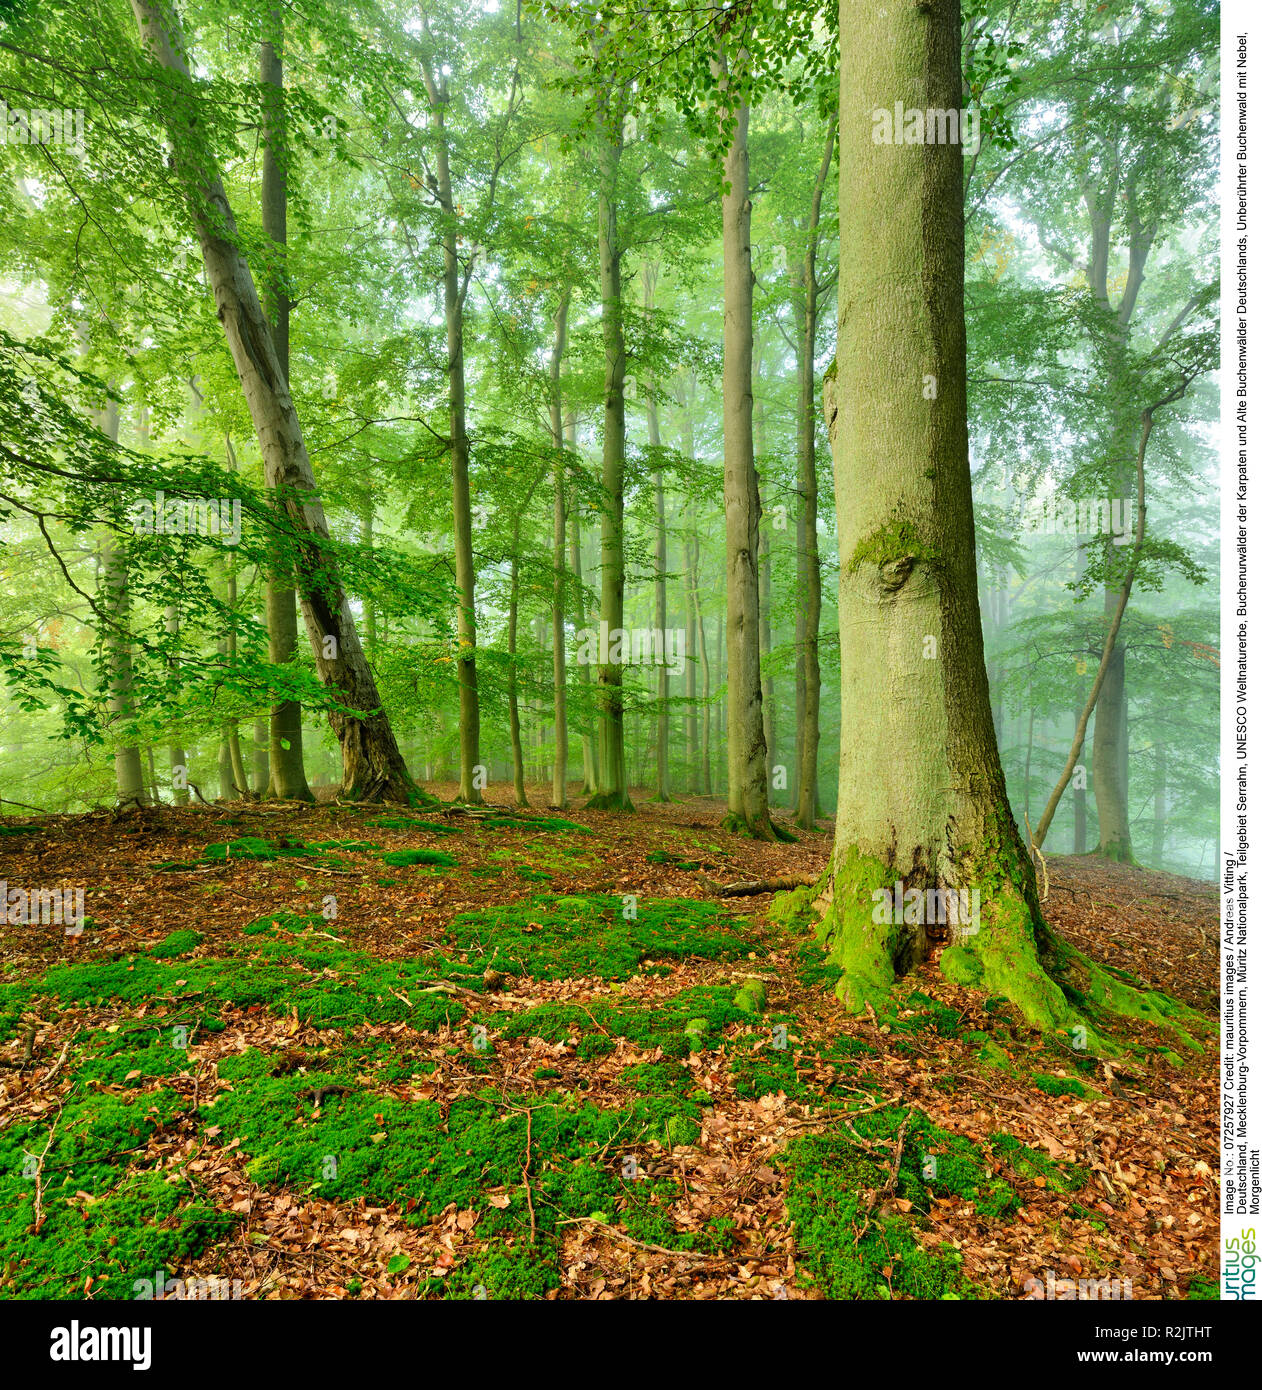 Allemagne, Mecklenburg-Vorpommern, parc national de Müritz, sous -zone Serrahn, UNESCO du patrimoine mondial naturel, forêts de hêtres des Carpates et forêts de hêtre ancienne en Allemagne, hêtraie vierge avec le brouillard, la lumière du matin Banque D'Images